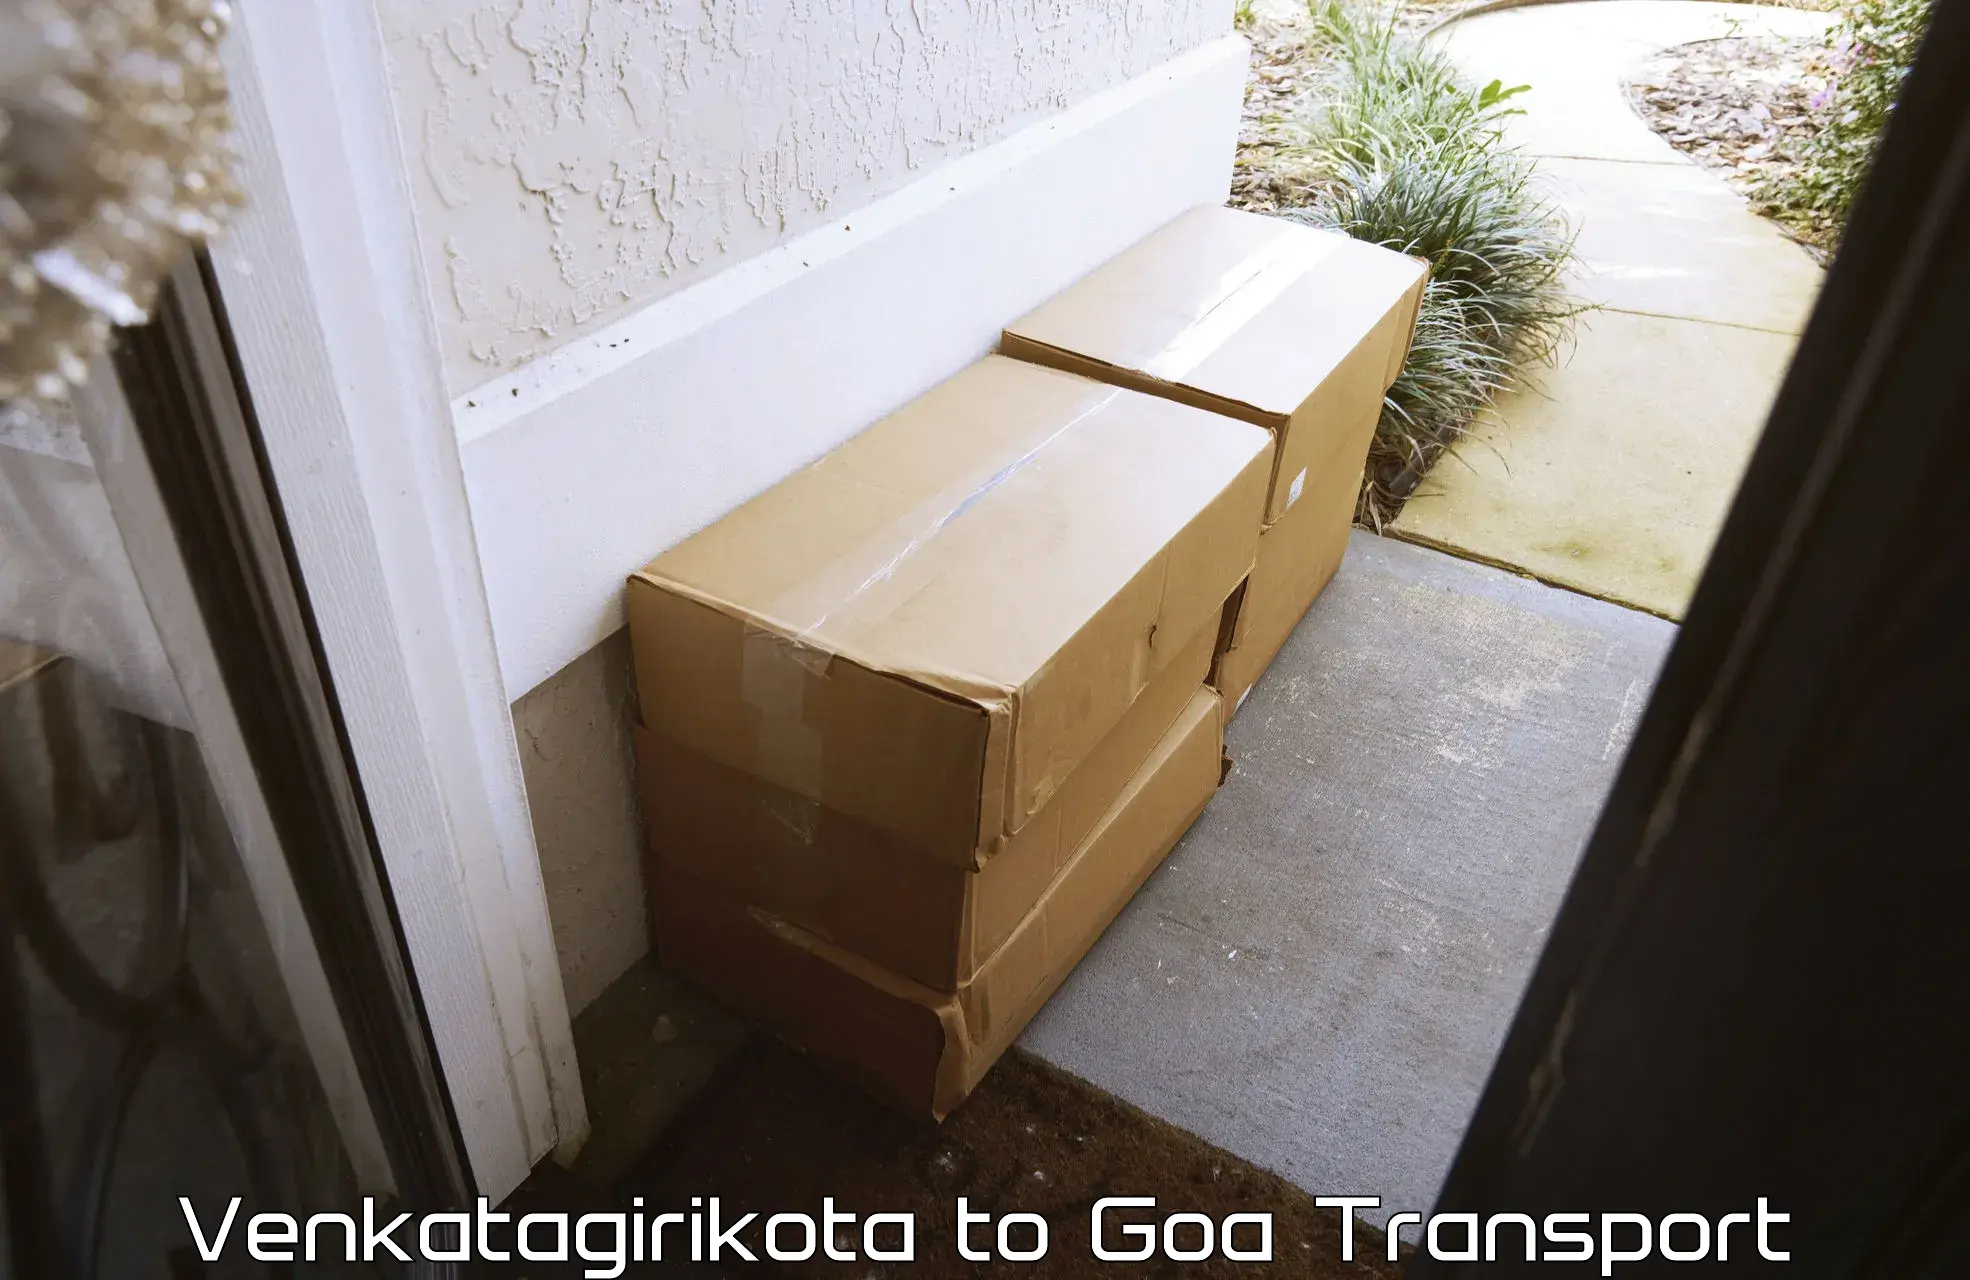 Cargo transport services Venkatagirikota to Bardez